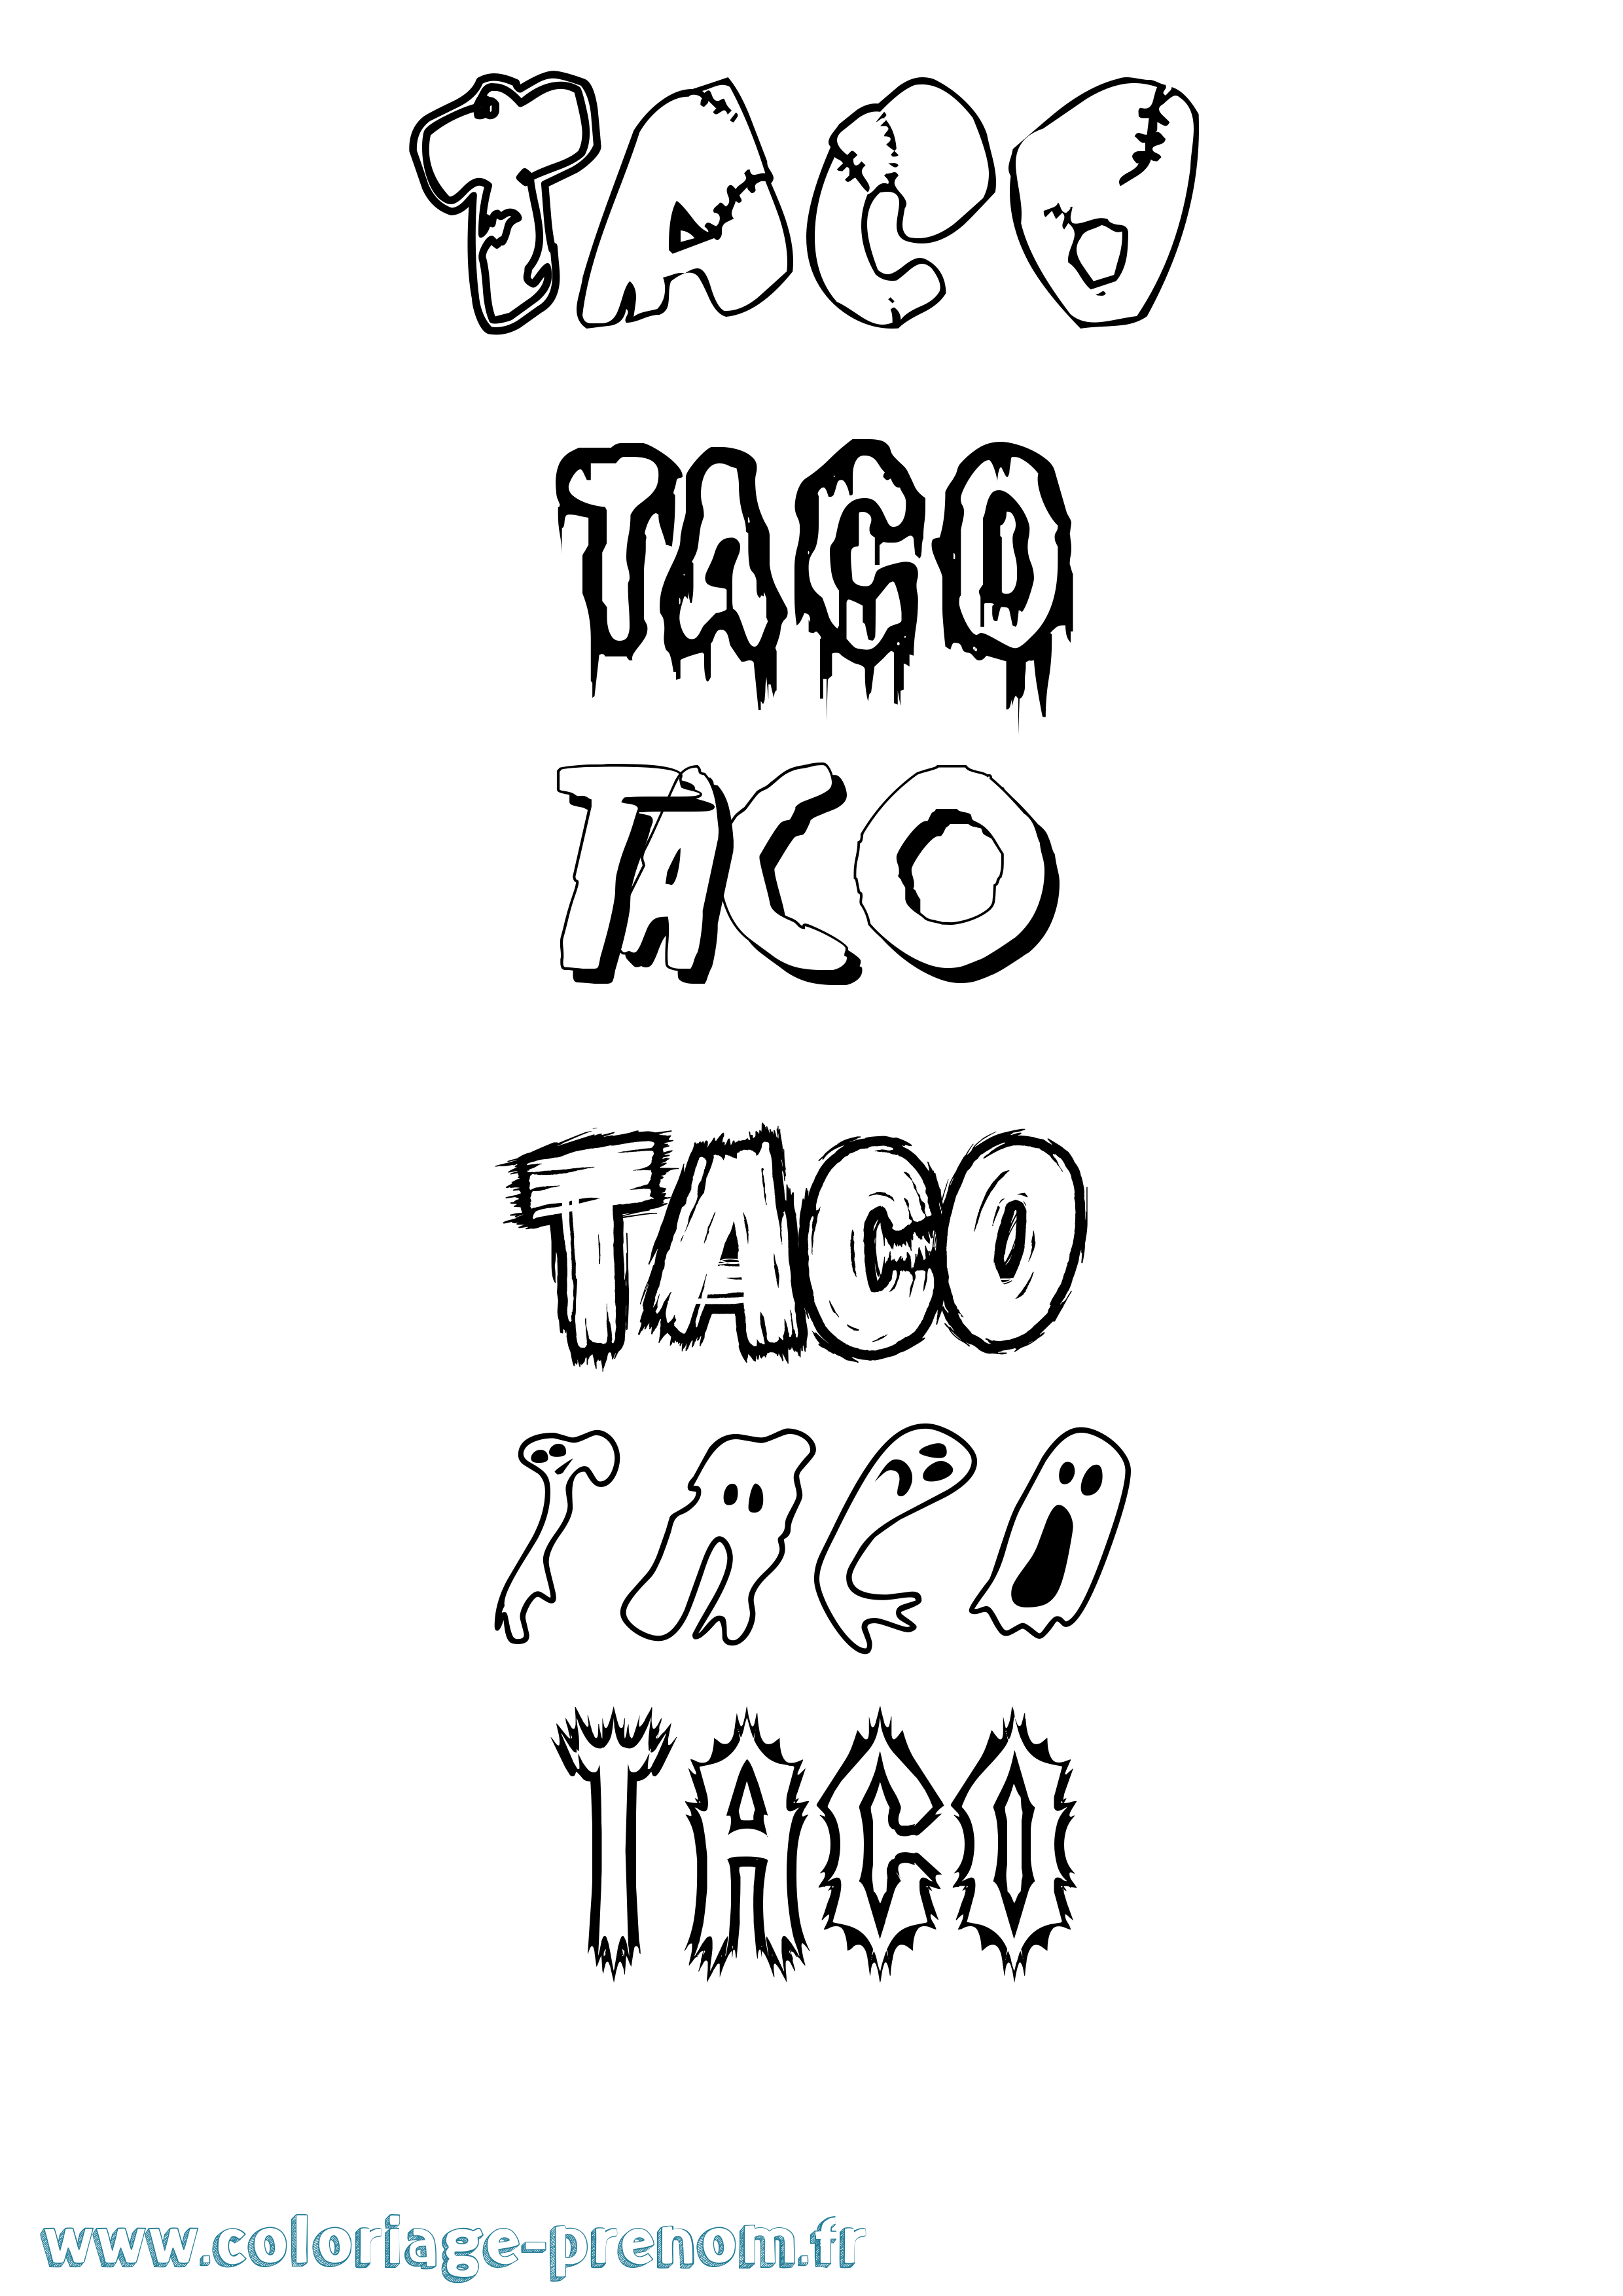 Coloriage prénom Taco Frisson